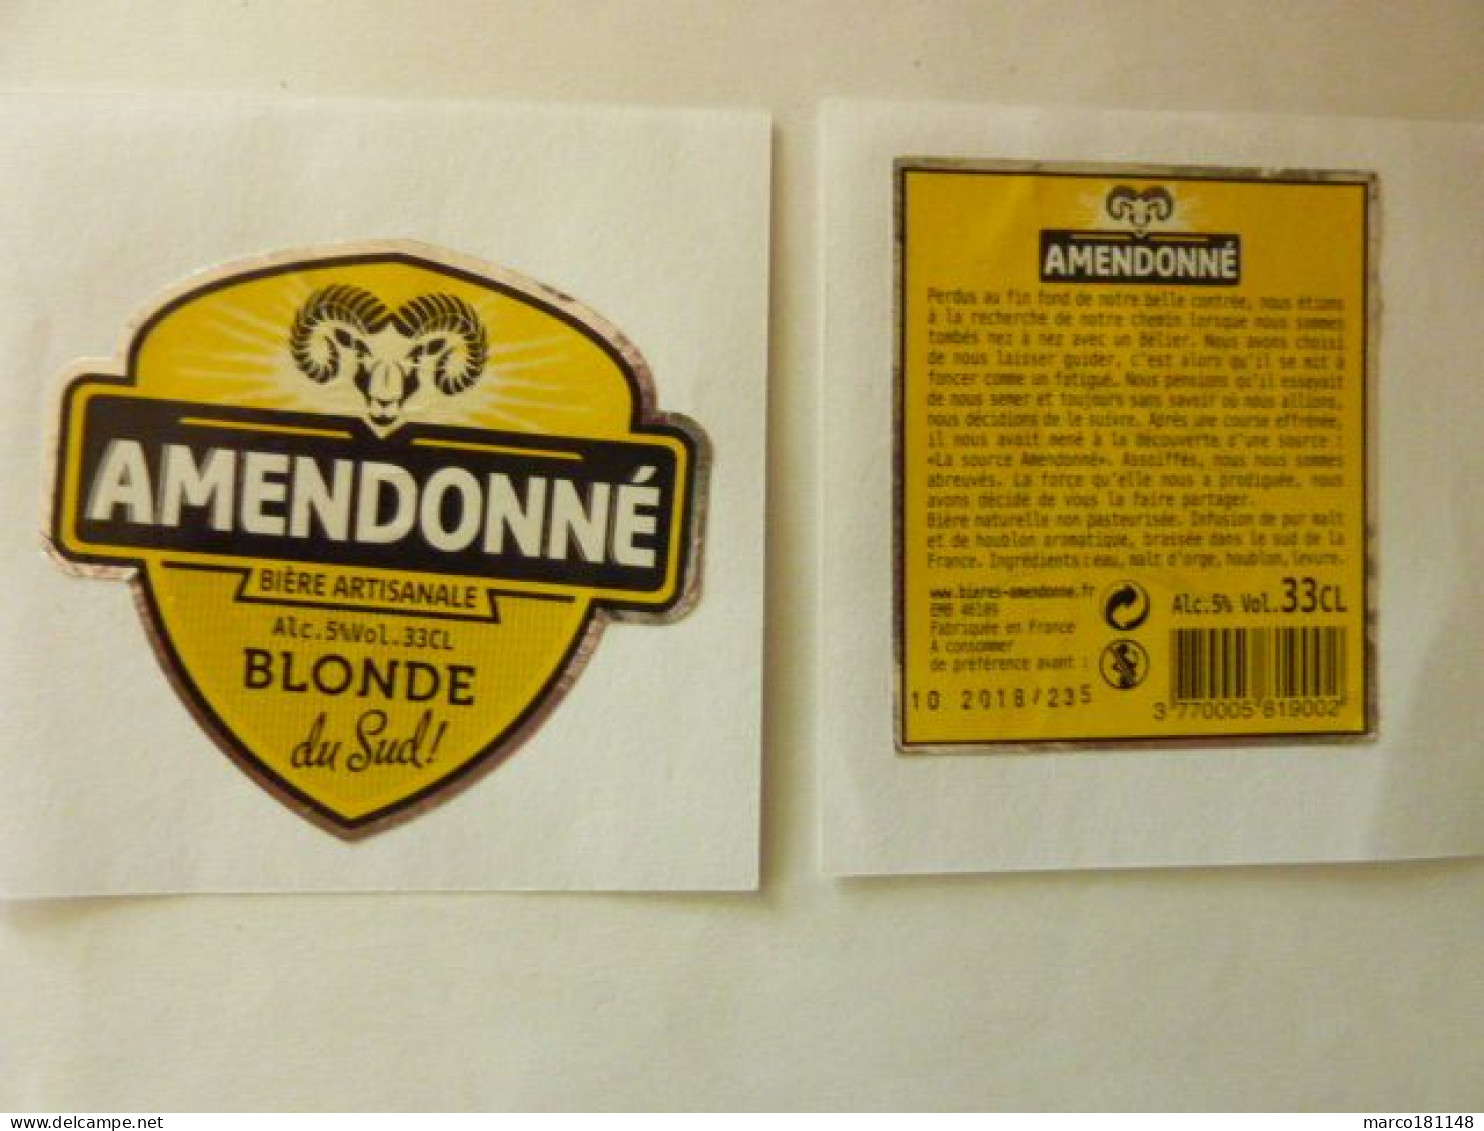 AMENDONNE - Blonde Du Sud - Bière